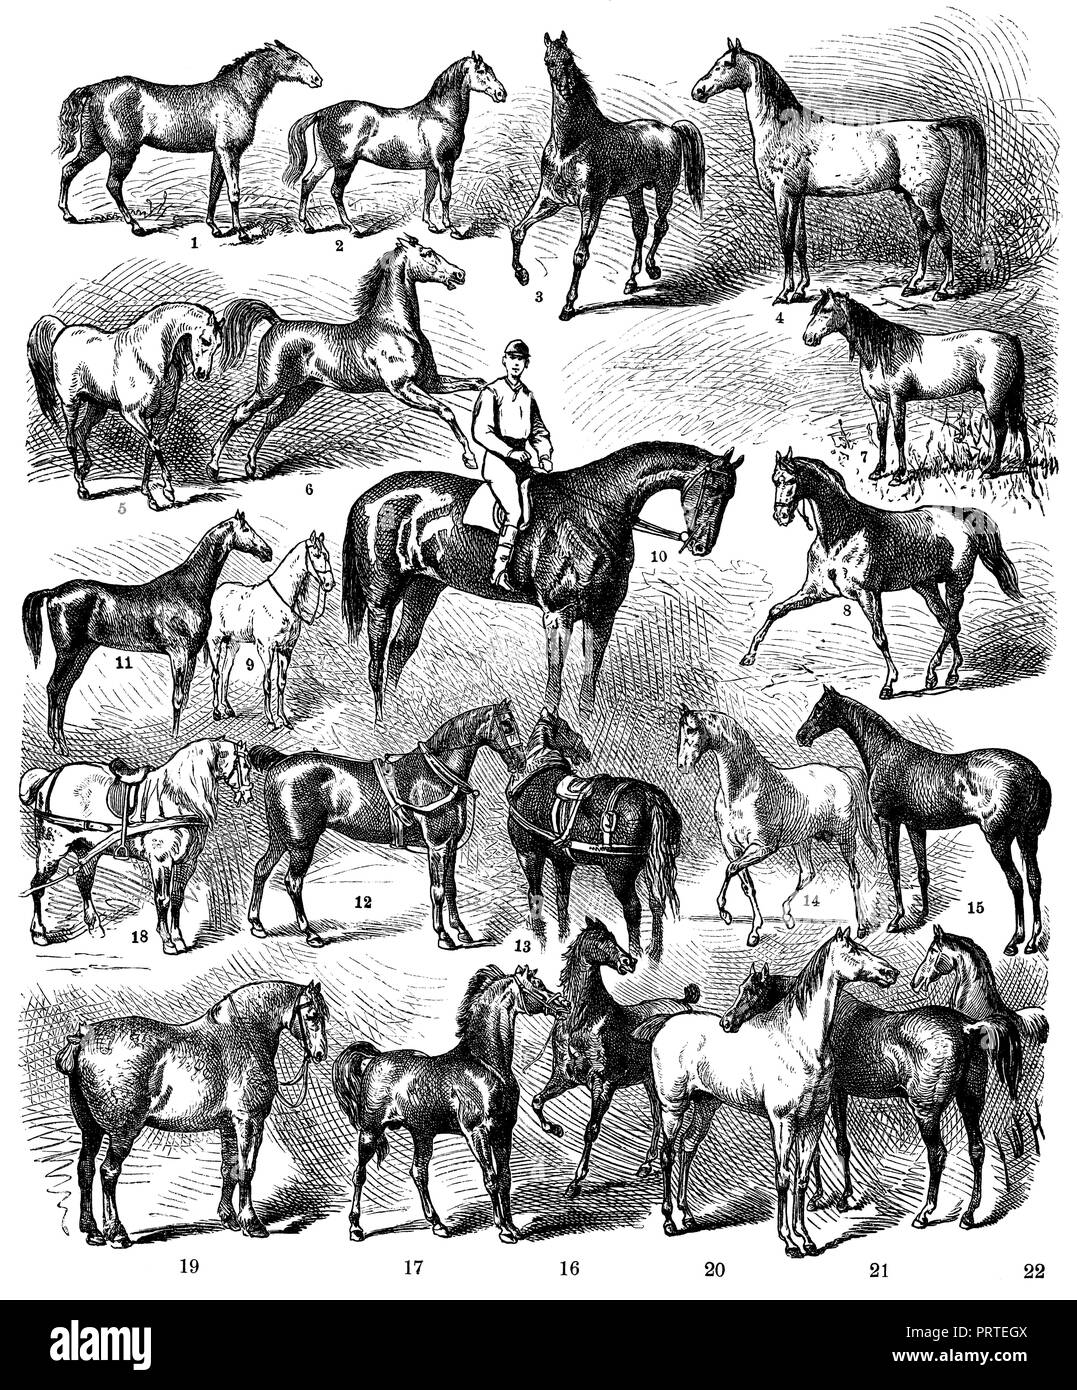 Pferderennen. 1) Tarpan, 2), 3) Tangus Turkmainatti (Araber), 4) Tajar (Araber), 5) die Marokkaner, 6) Tscherkessen, 7) Russische Steppe Pferd, 8) Russische Harttraber, 9) moldawische Rennen, 10) Englische Rennpferd (Vollblut), 11) Englisch Jagd Pferd (Hunter), 12) englische Kutsche Pferd (Cleveland), 13) Suffolk Punch (England), 14) Araber, 15) Limousin (Frankreich), 16) Mellerand (Frankreich), 17) Cotentin (Frankreich), 18) Percheron, 19) Boulogne, 20) Mecklenburg aus der Alt-Ivenacker Stud., 21) Preußische Pferde (Familie von Harras und Rufus), Stockfoto